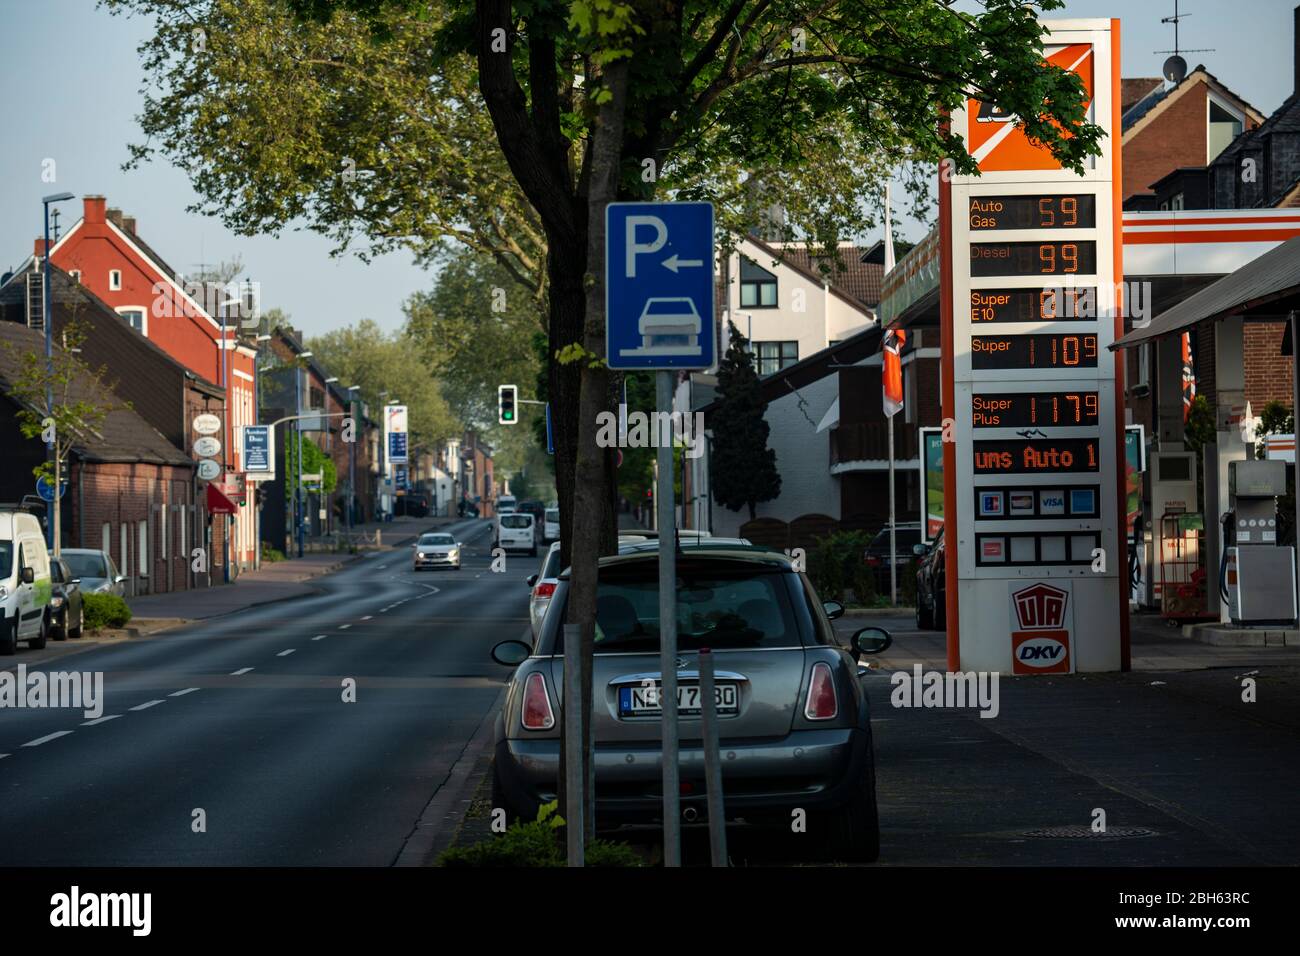 Tankstelle in Büderich mit sehr preiswertem Treibstoffangebot. Durch die Corona-Krise kostet ein Liter Diesel aktuell nur 0,999 Euro. Stock Photo